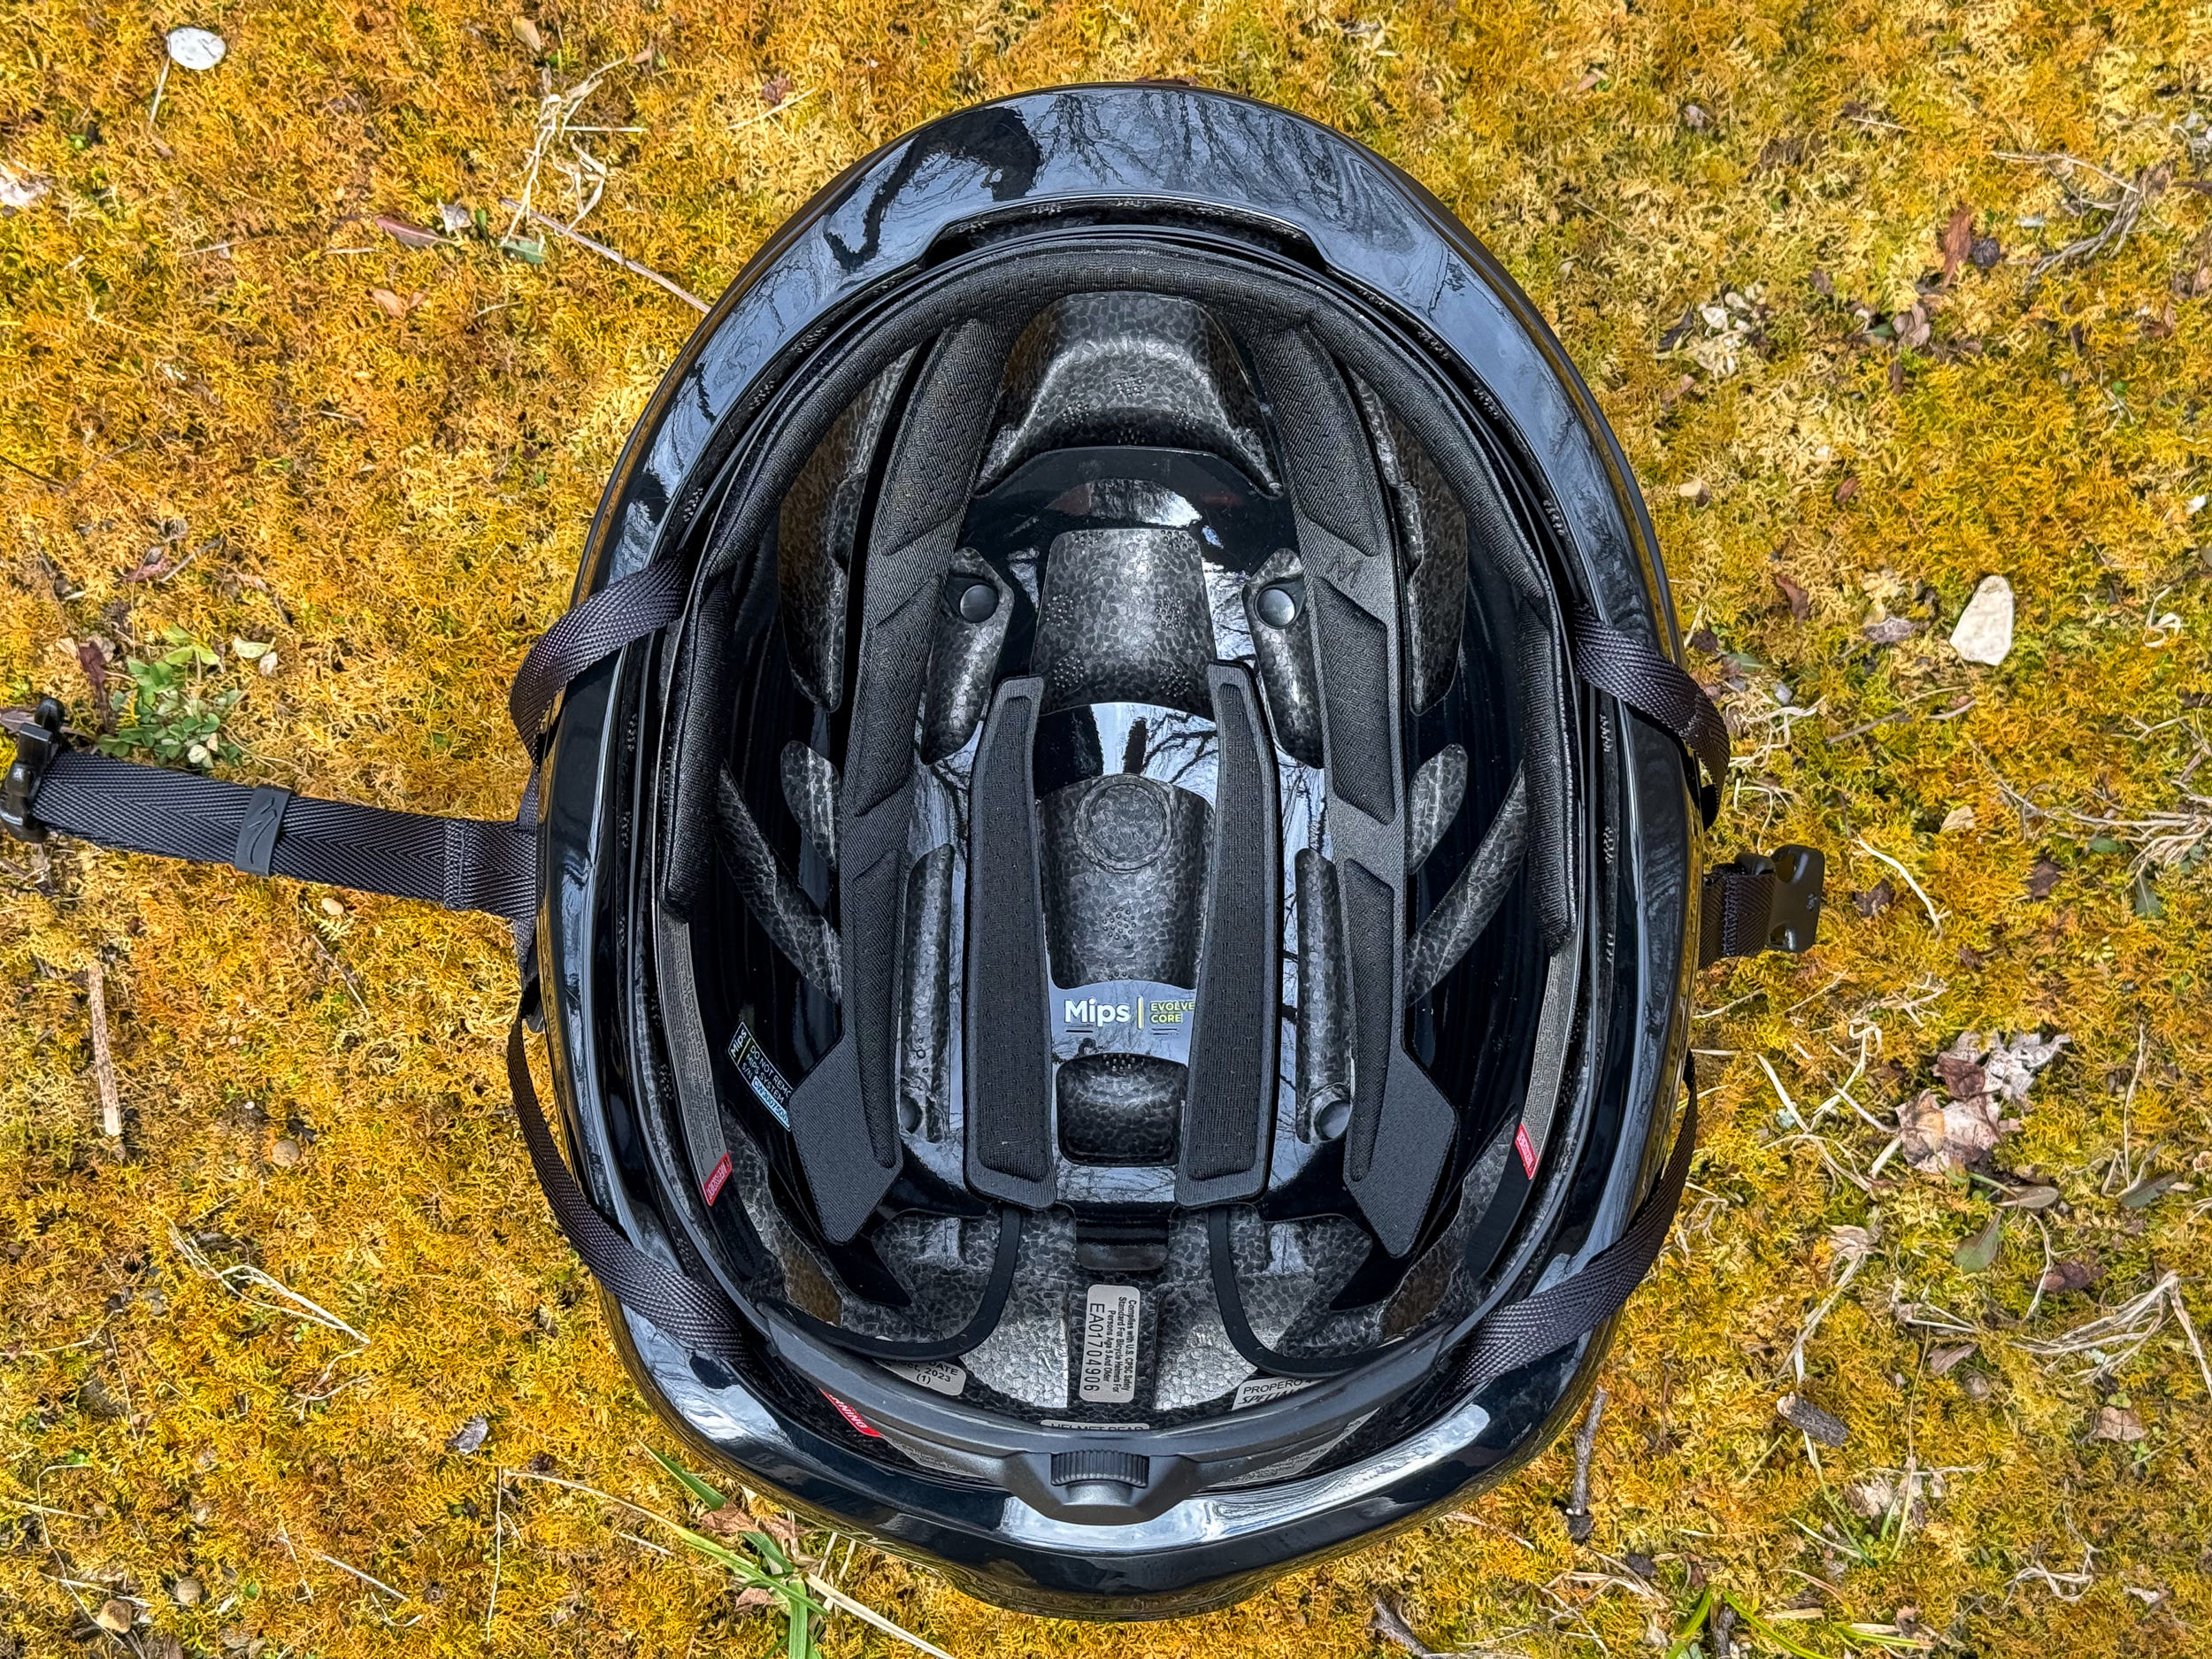 Specialized Propero 4 bike helmet inside